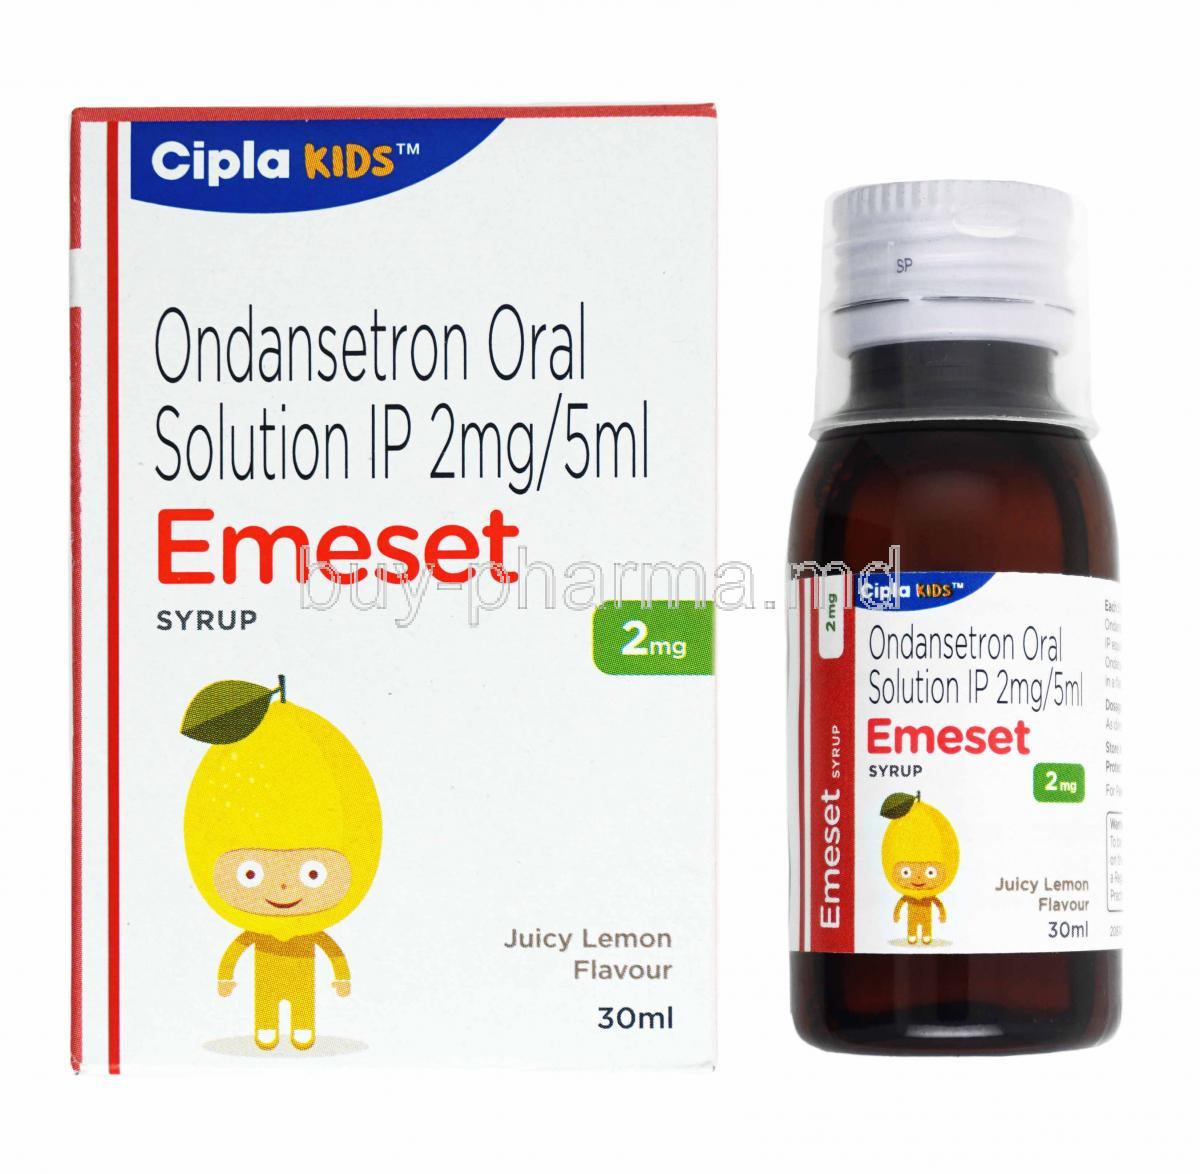 Emeset Syrup Lemon Flavour, Ondansetron box and bottle